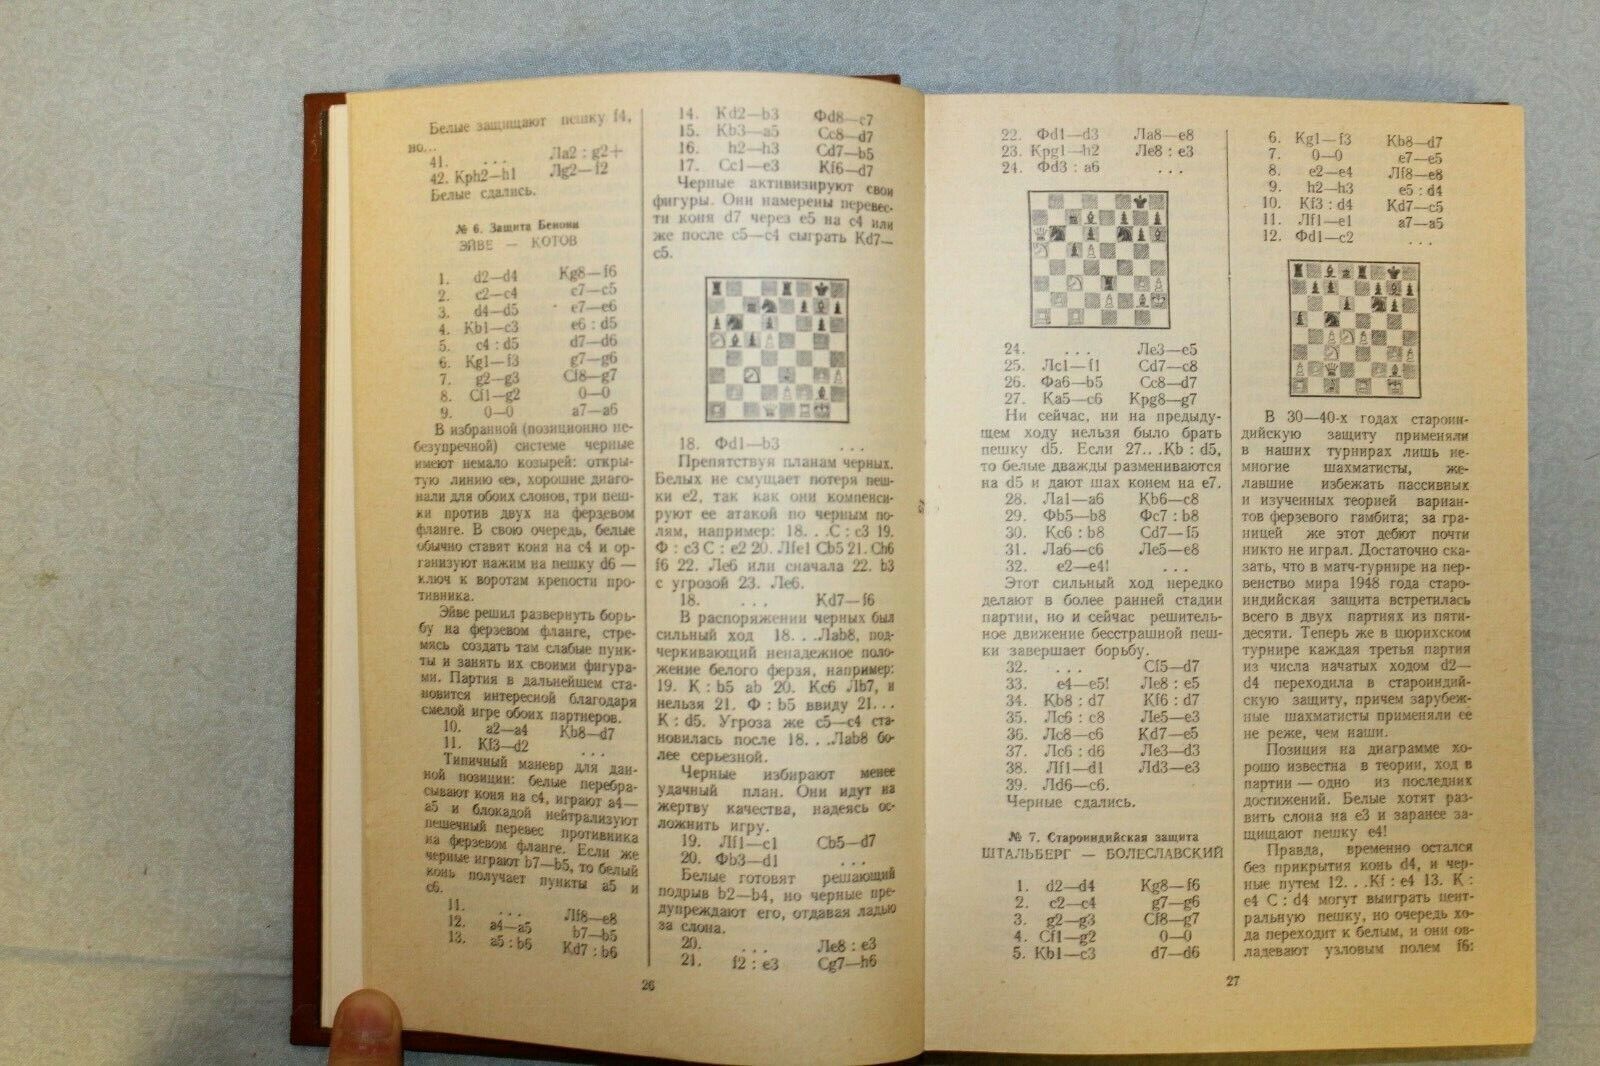 11027.Chess Book signed by Zvorykina.International Tournament Grandmasters.Bronstein